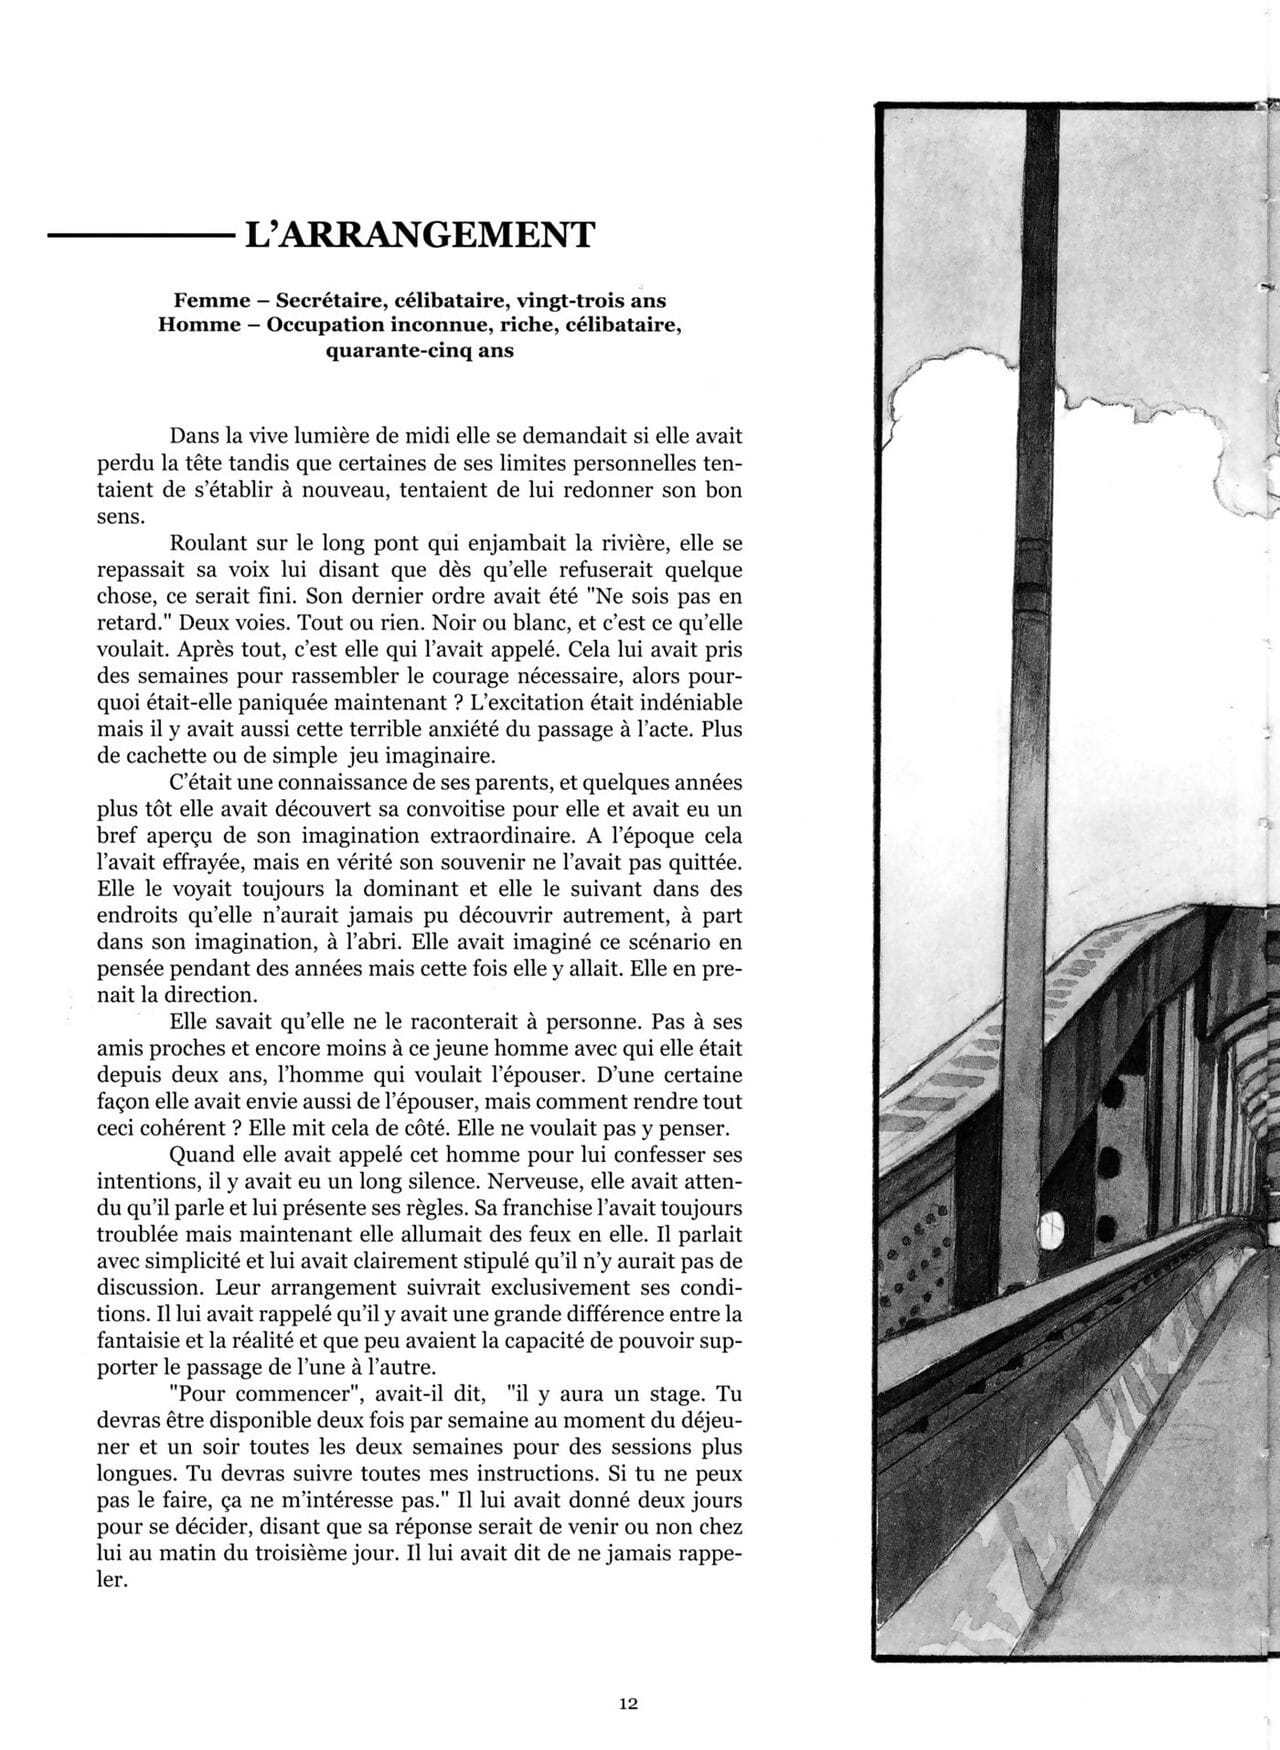 أومبير وآخرون لوميير 01 page 1